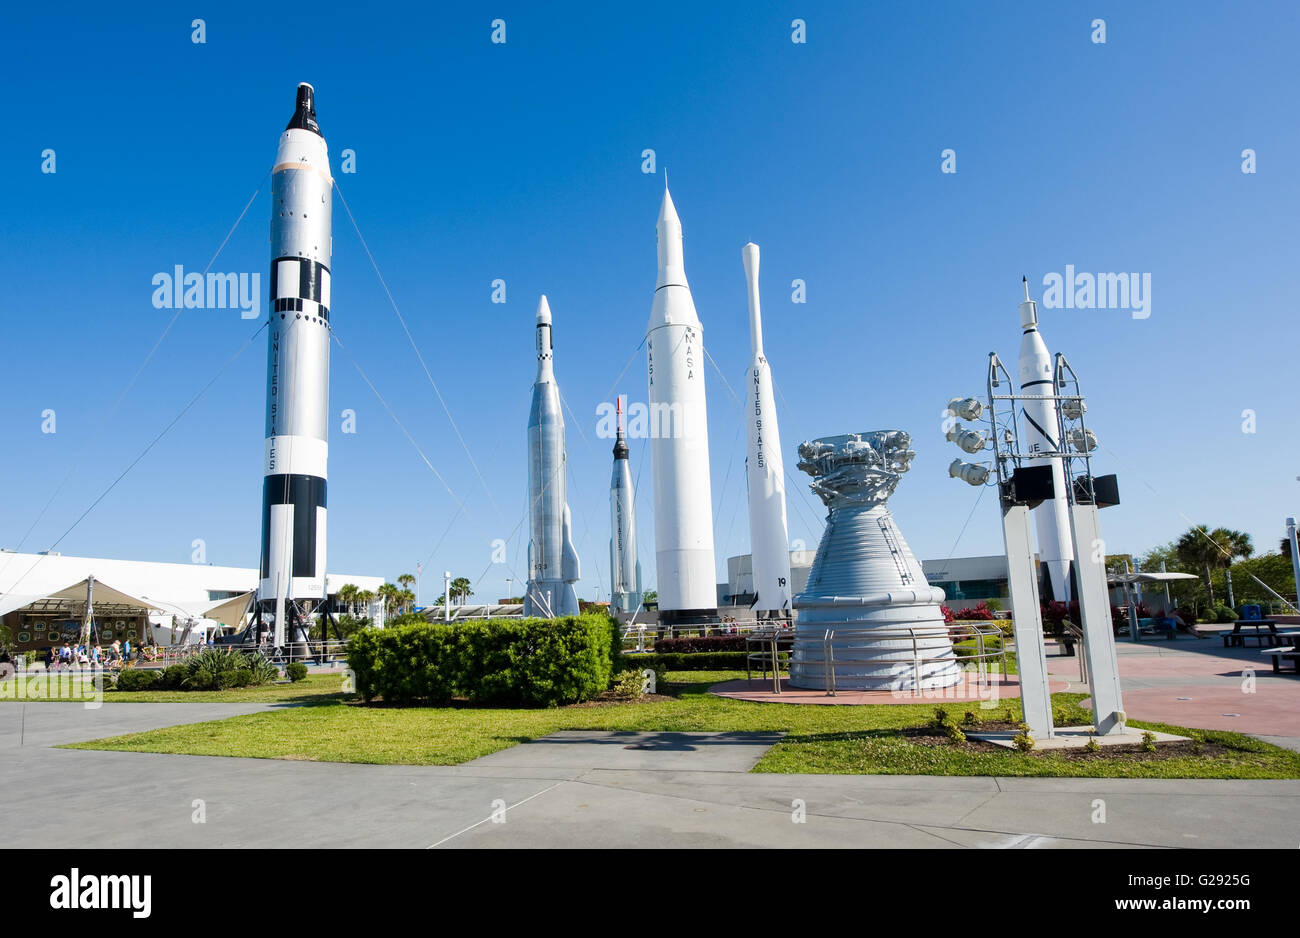 Varios cohetes son exhibidos en el jardín de cohetes en el Complejo para Visitantes del Centro Espacial Kennedy Foto de stock